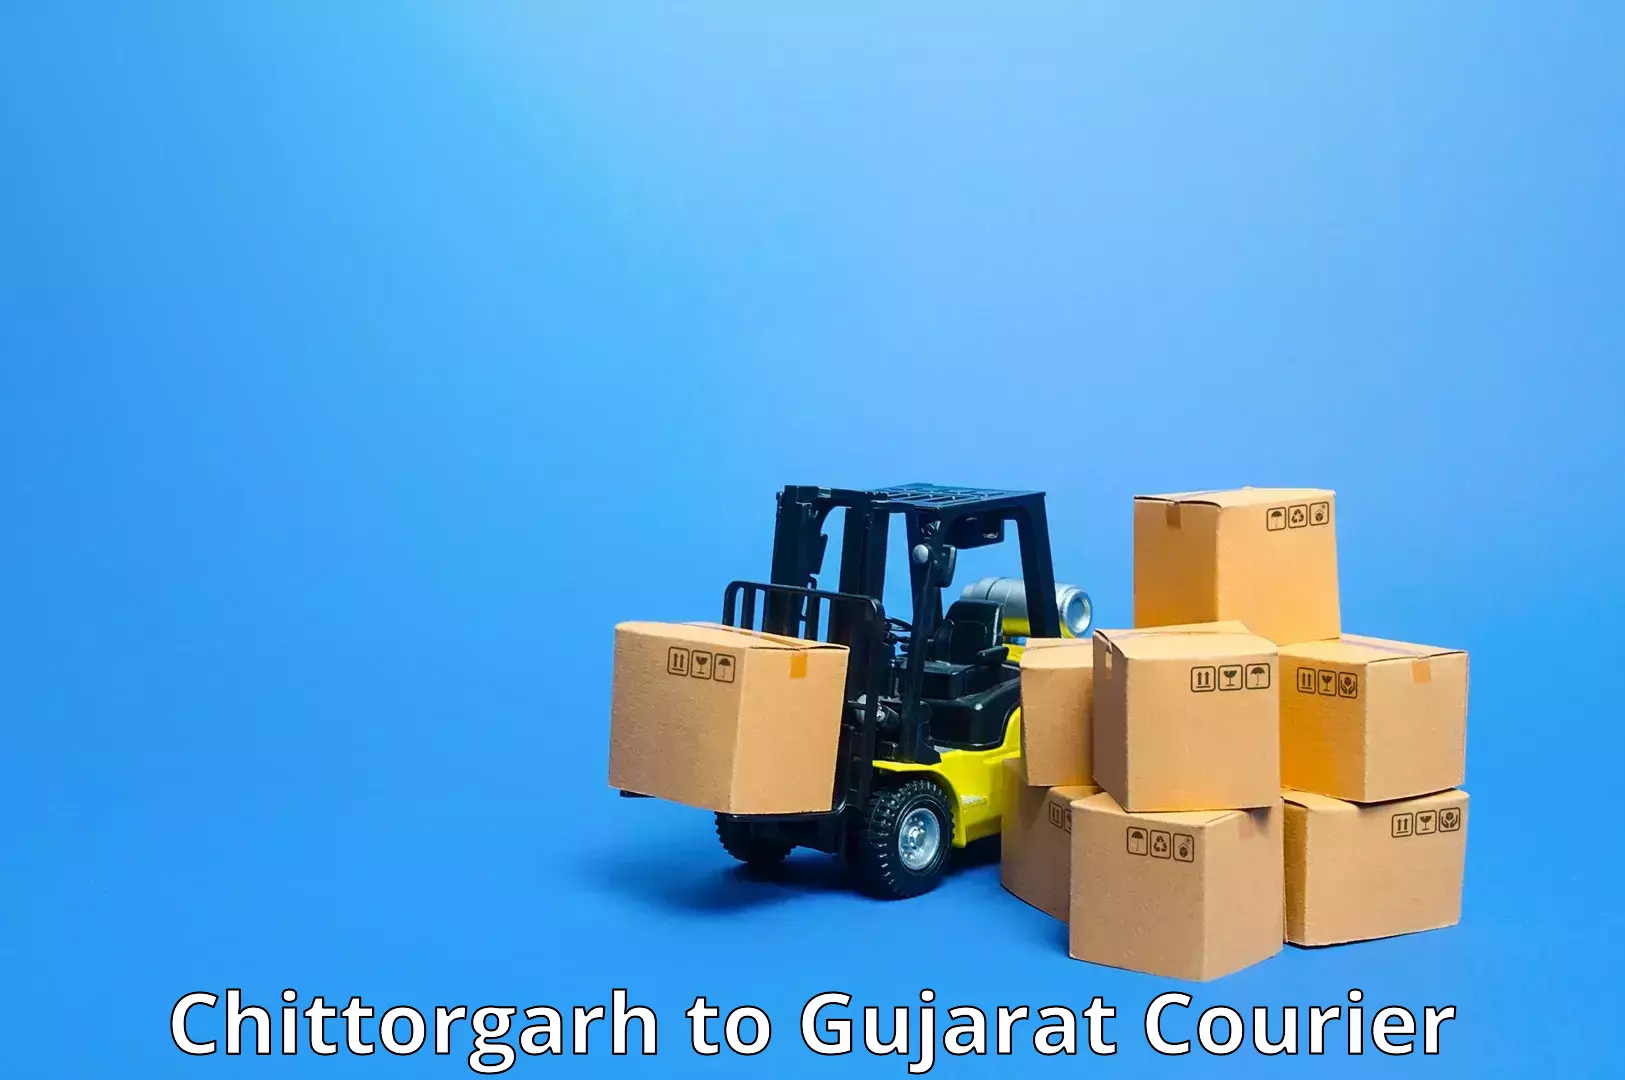 Courier service innovation Chittorgarh to Himmatnagar